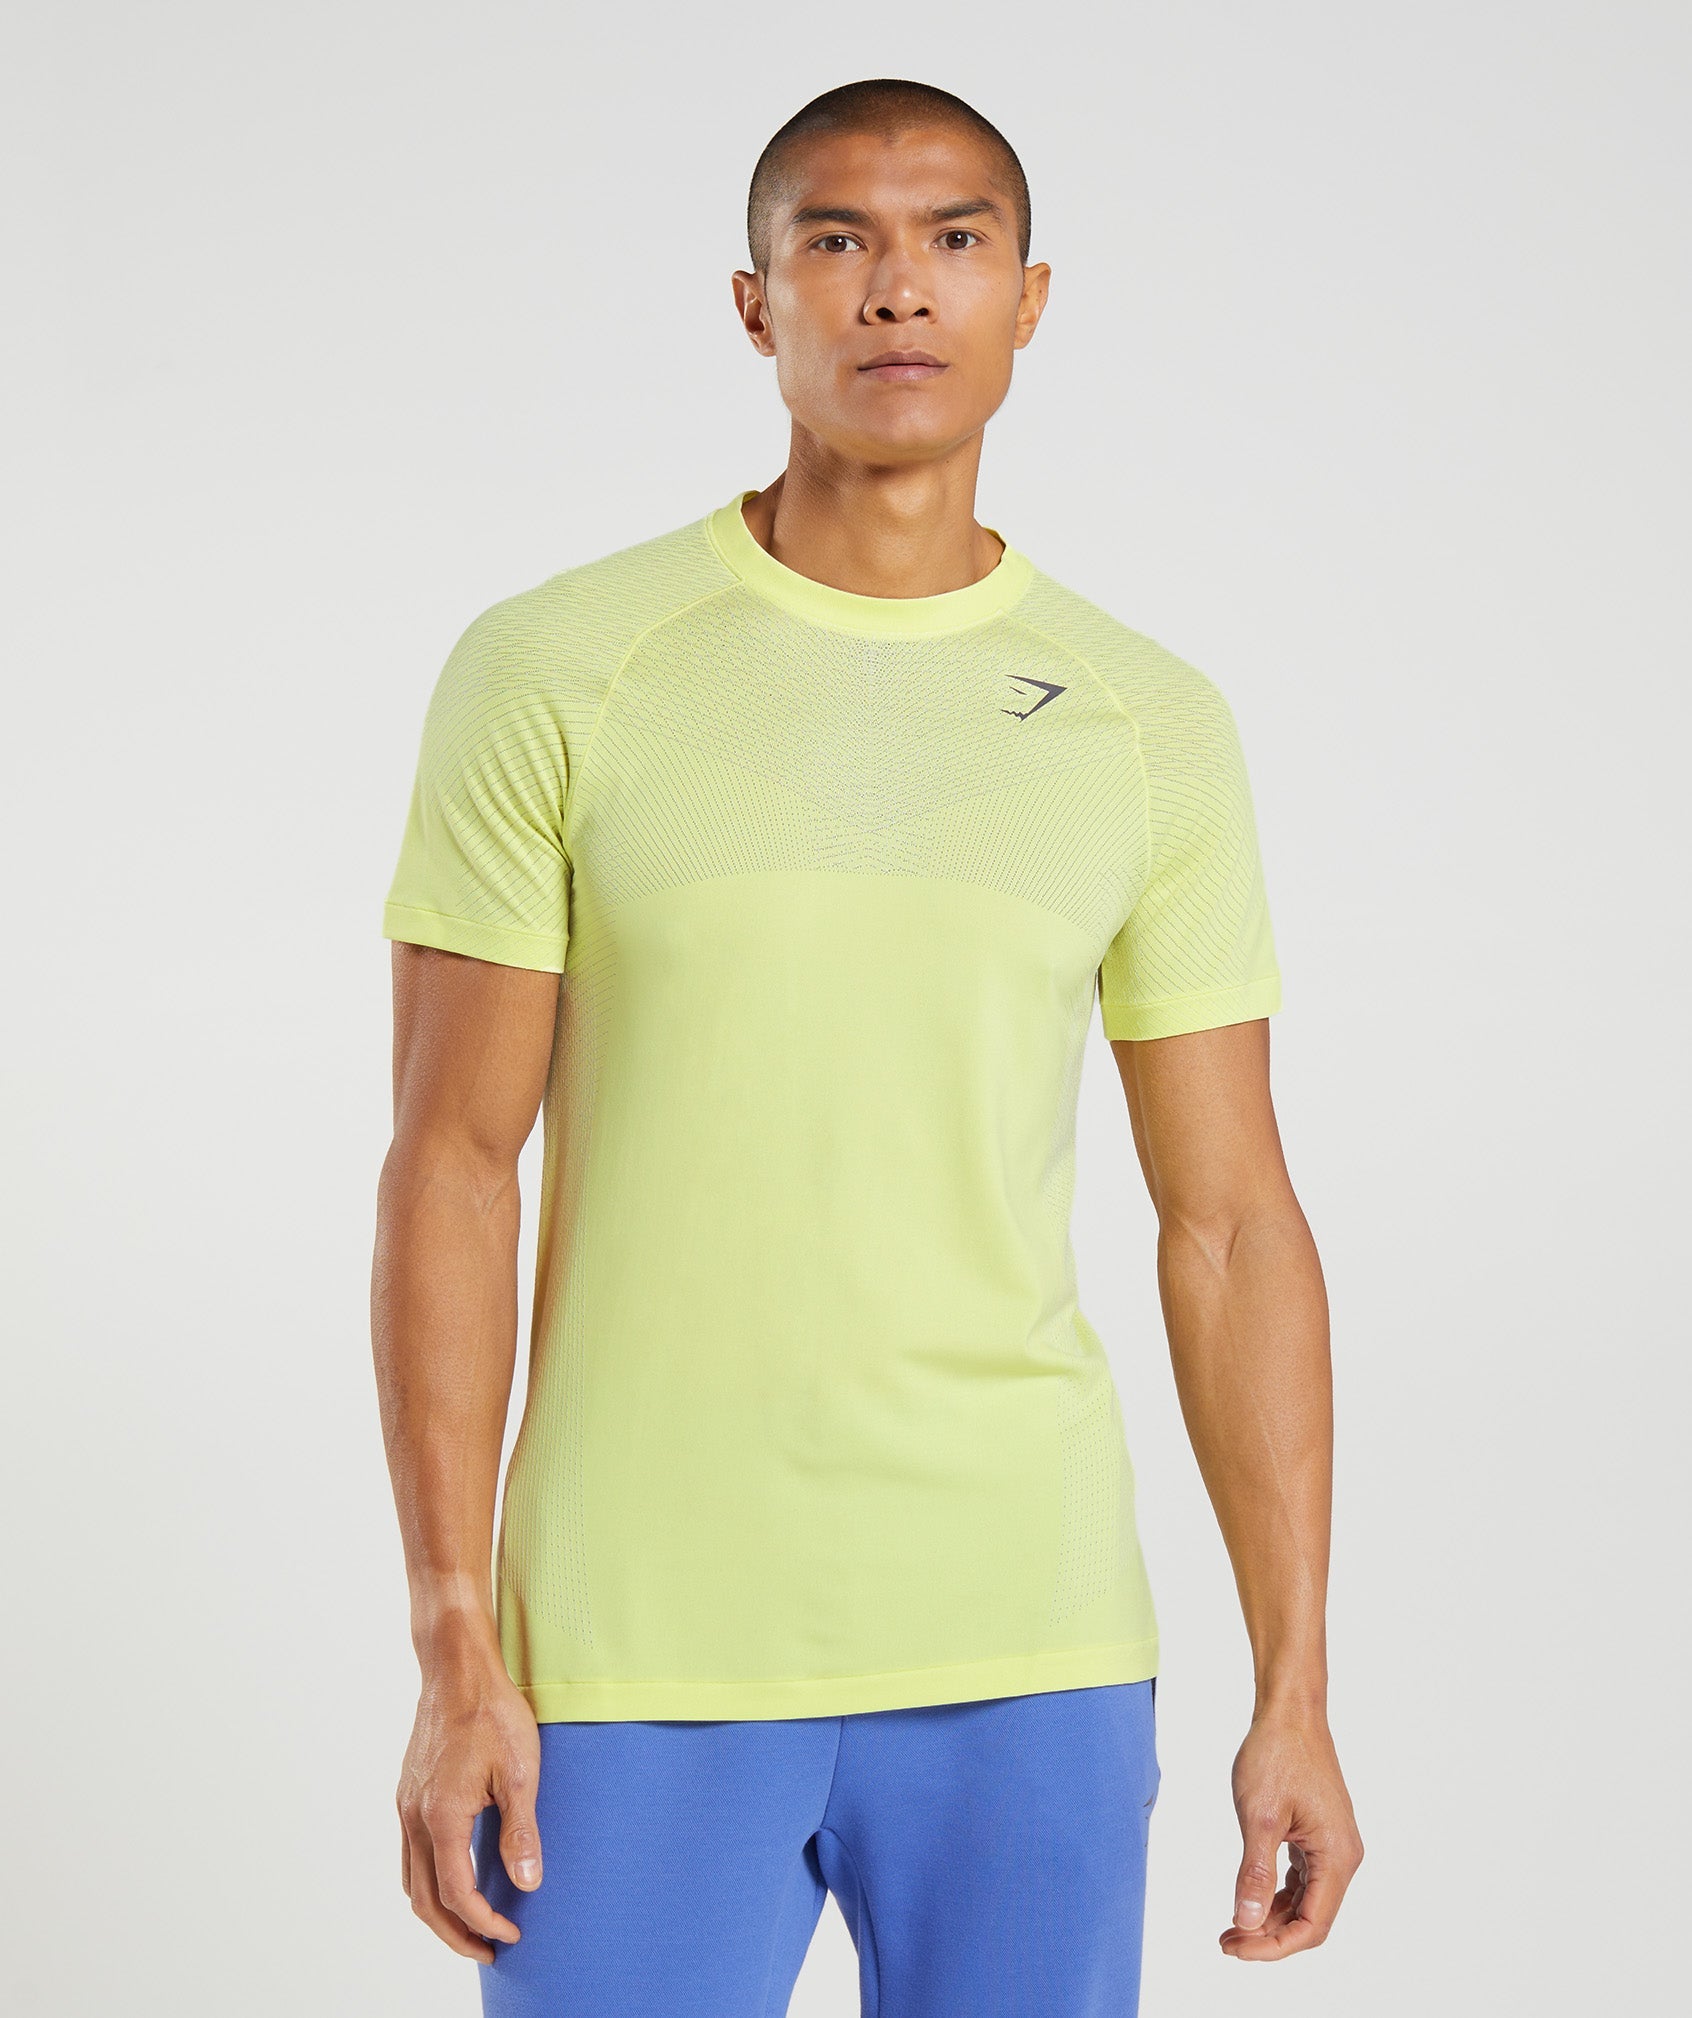 Gymshark Sport Seamless T-Shirt - Slate Blue/Winter Teal